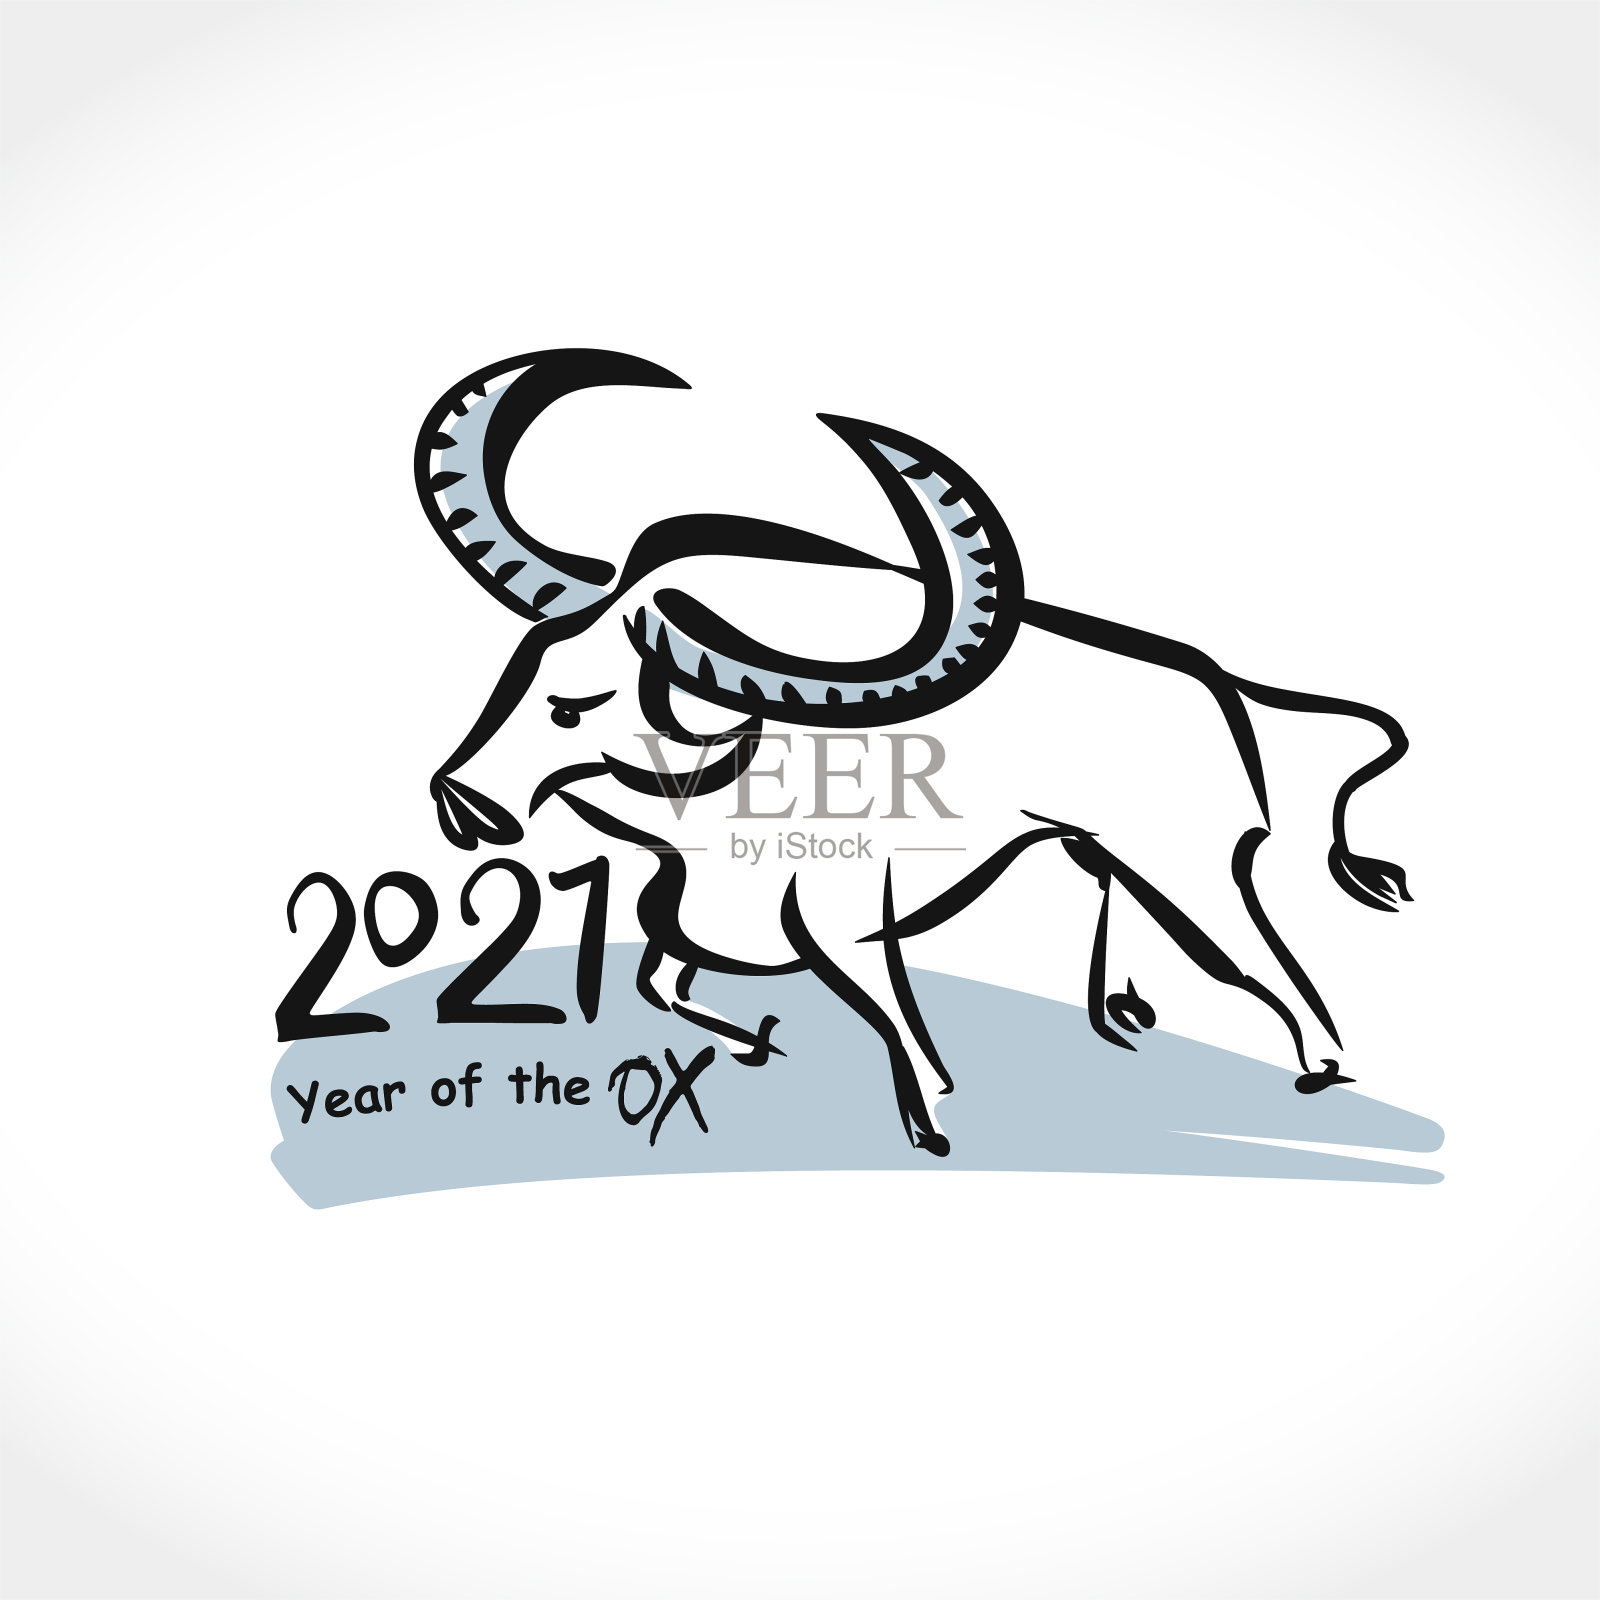 中国的十二生肖是牛年。印有白公牛的明信片。黑色水墨毛笔书法符号的2021年。矢量元素为平面风格的新年设计。2021年牛年插画。插画图片素材